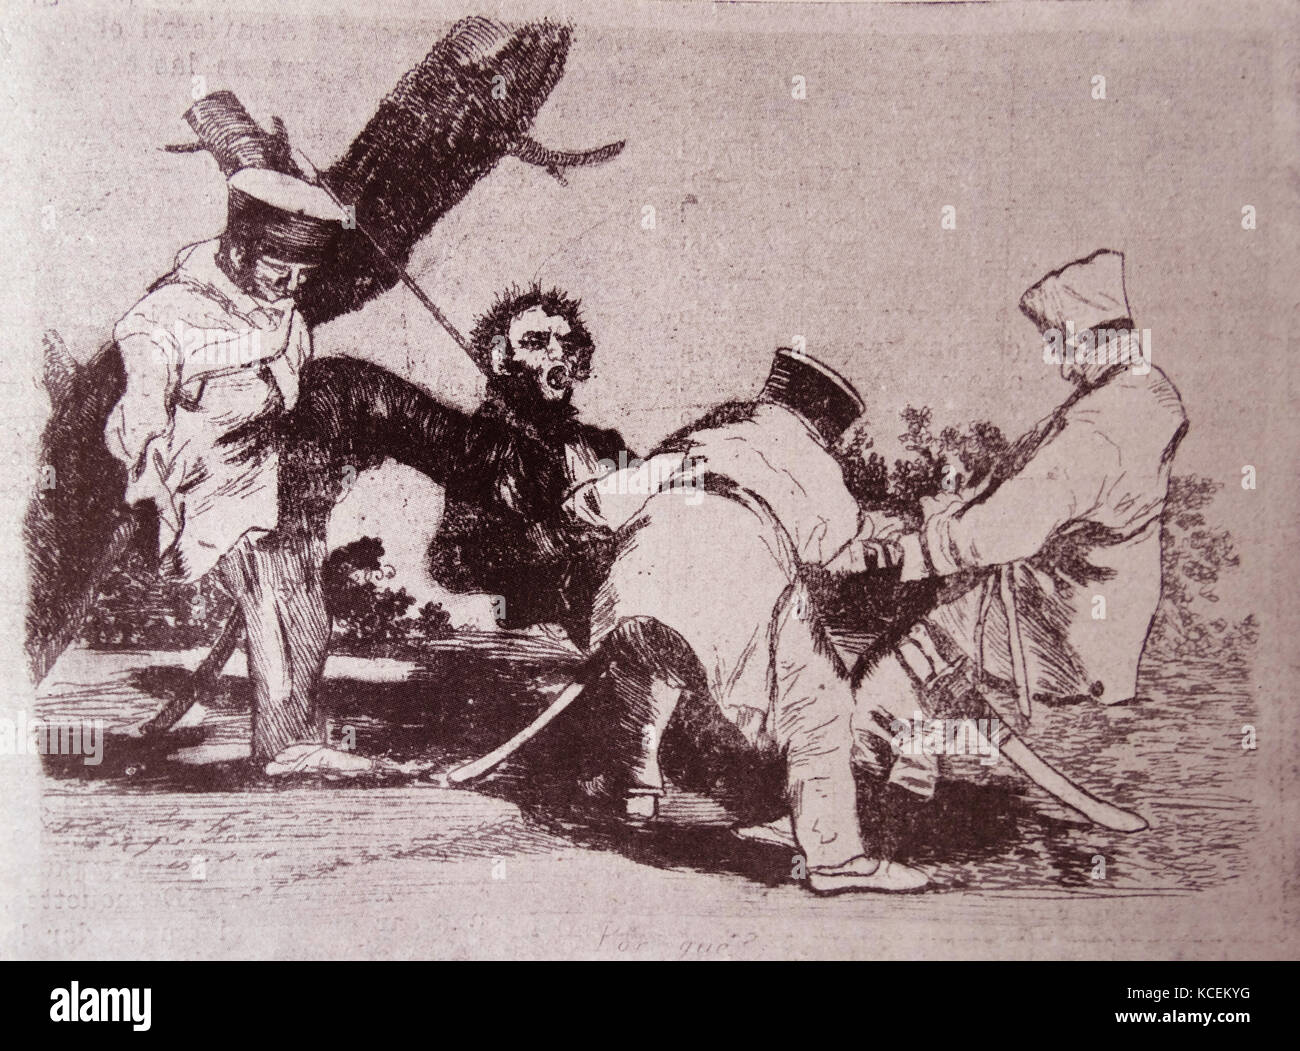 Illustrazione di Francisco Goya (1746-1828) Spagnolo un pittore romantico, delineando le atrocità francesi durante l'invasione napoleonica della Spagna. Datata del XIX secolo Foto Stock